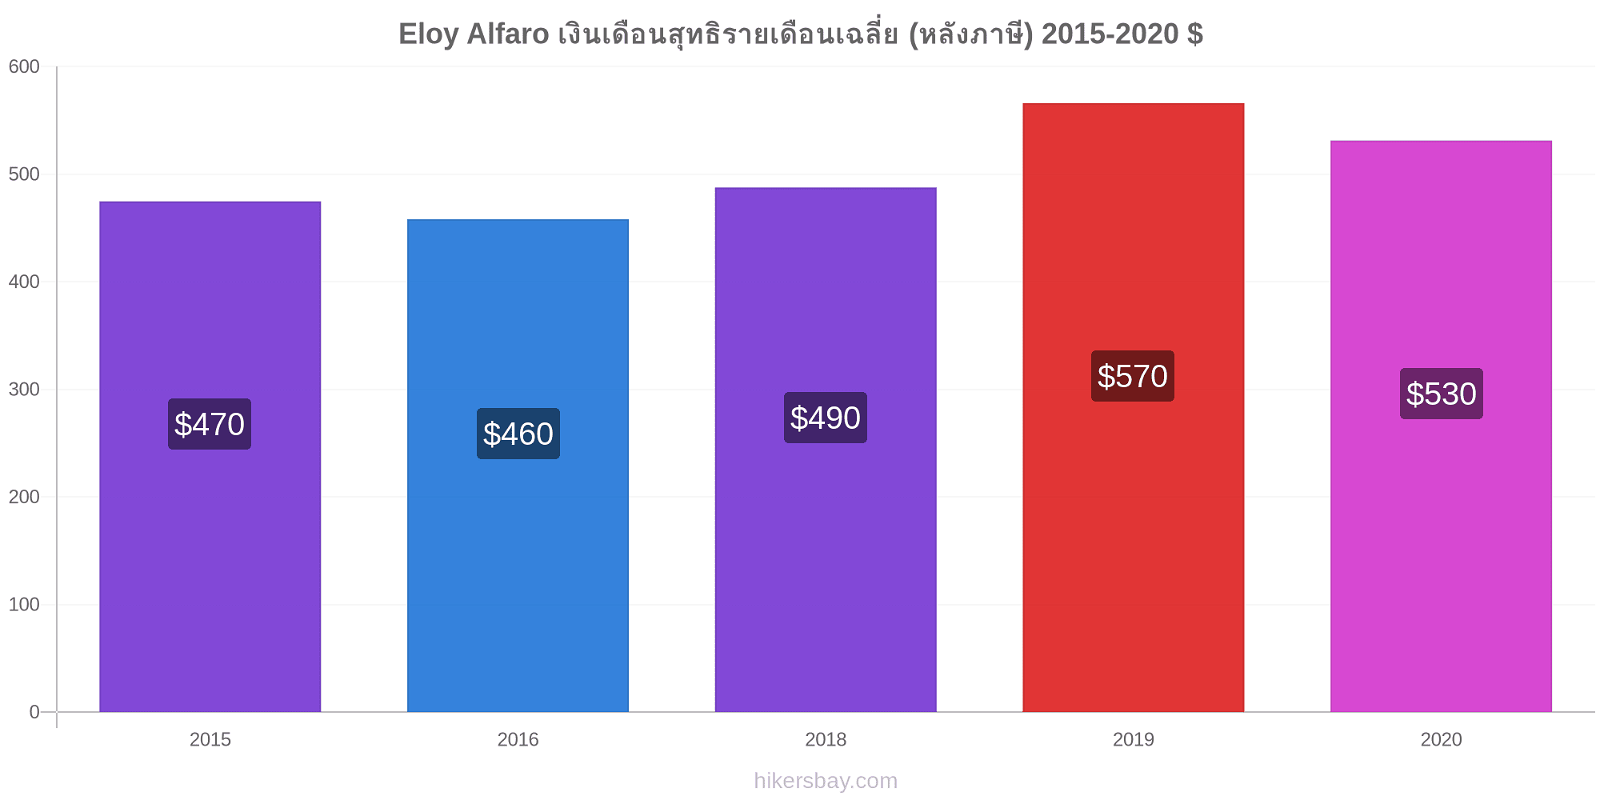 Eloy Alfaro การเปลี่ยนแปลงราคา เงินเดือนสุทธิรายเดือนเฉลี่ย (หลังภาษี) hikersbay.com